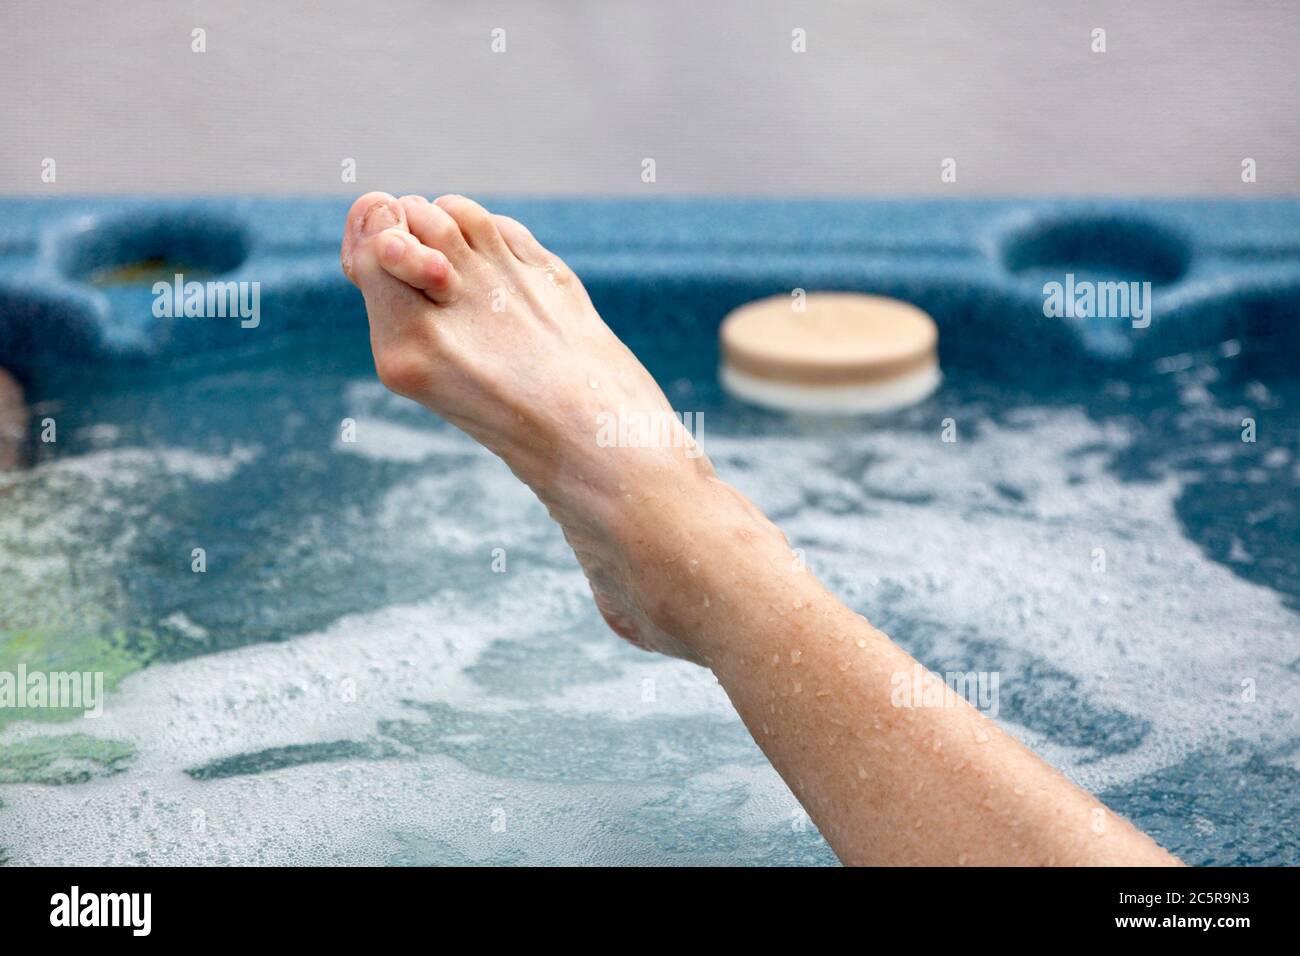 Weiblicher Fuß im Whirlpool mit Knochendeformitäten: Bunions und Hammerzehen. Horizontal. Stockfoto